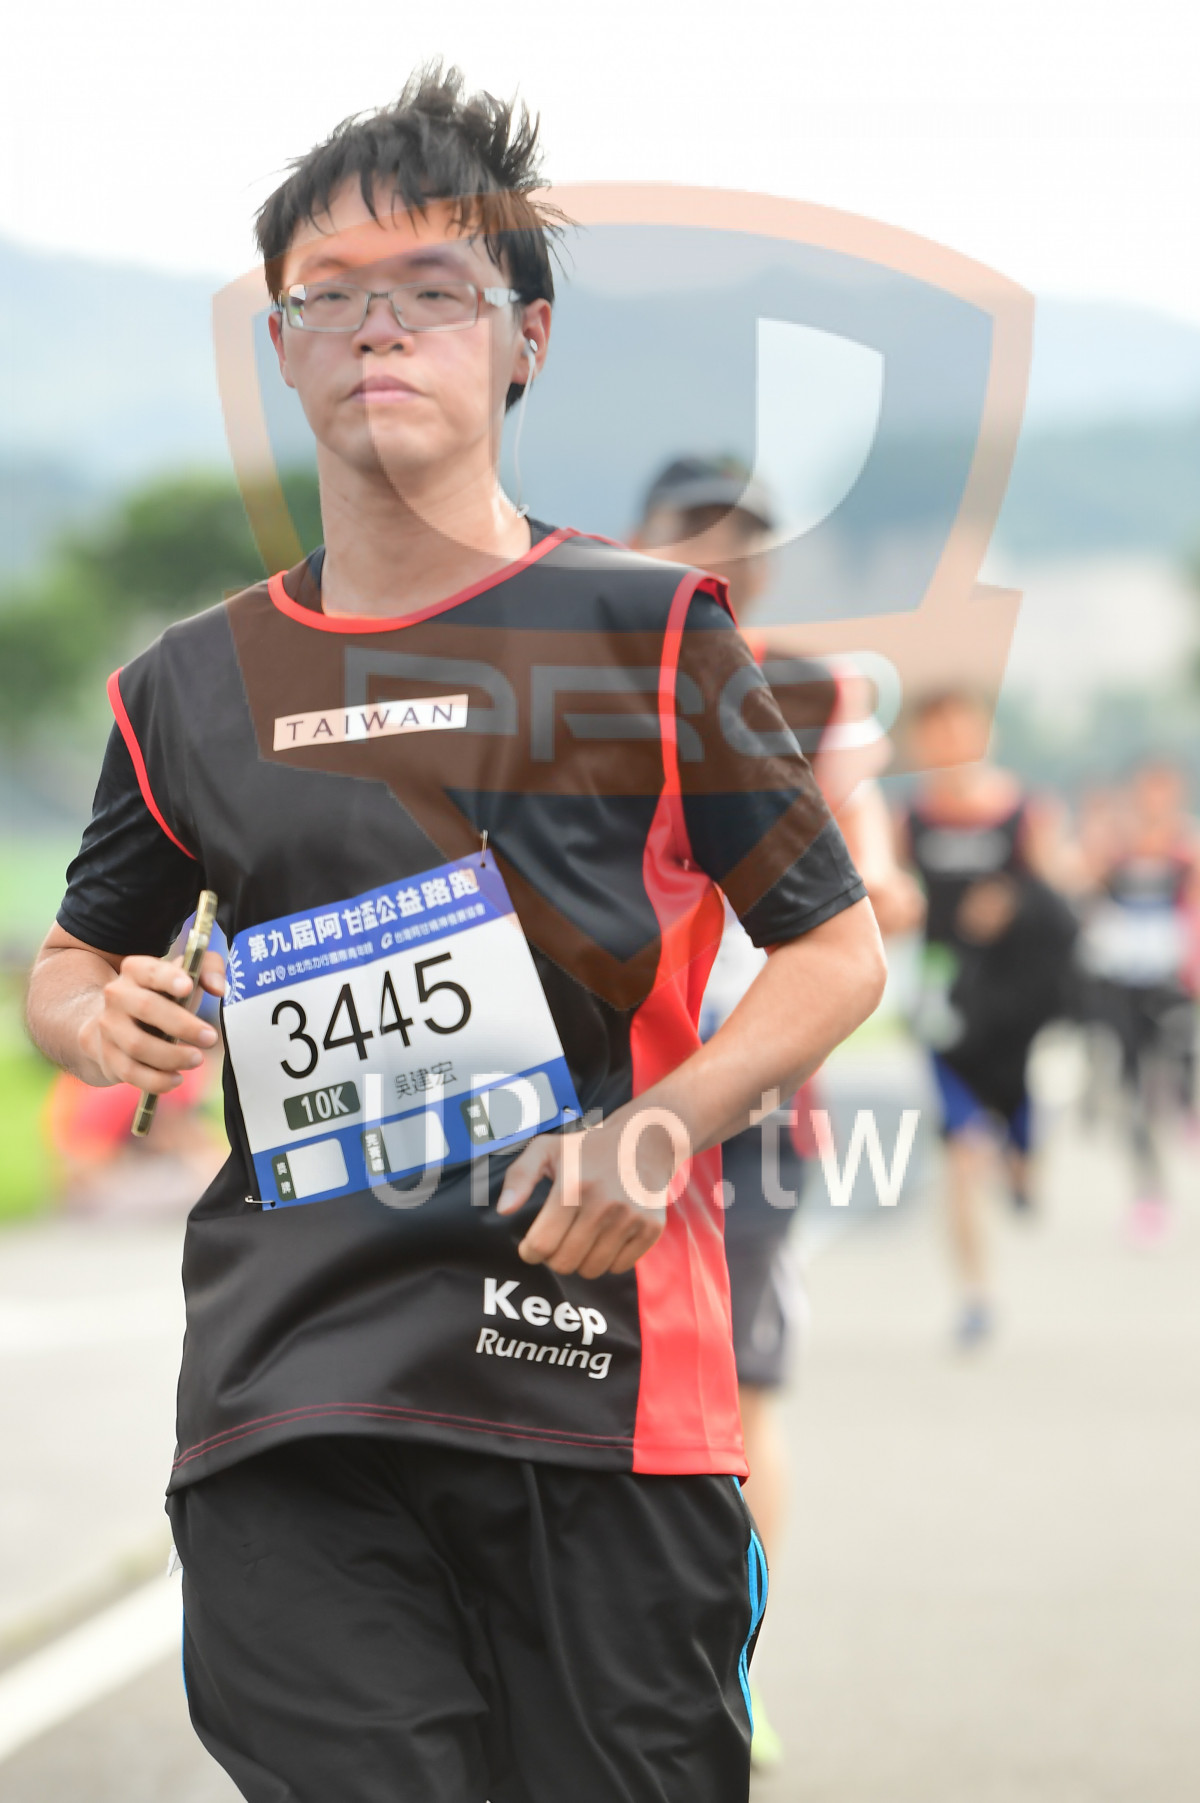 TAIWAN,3445,,10K,Keep,Running|終點1|中年人